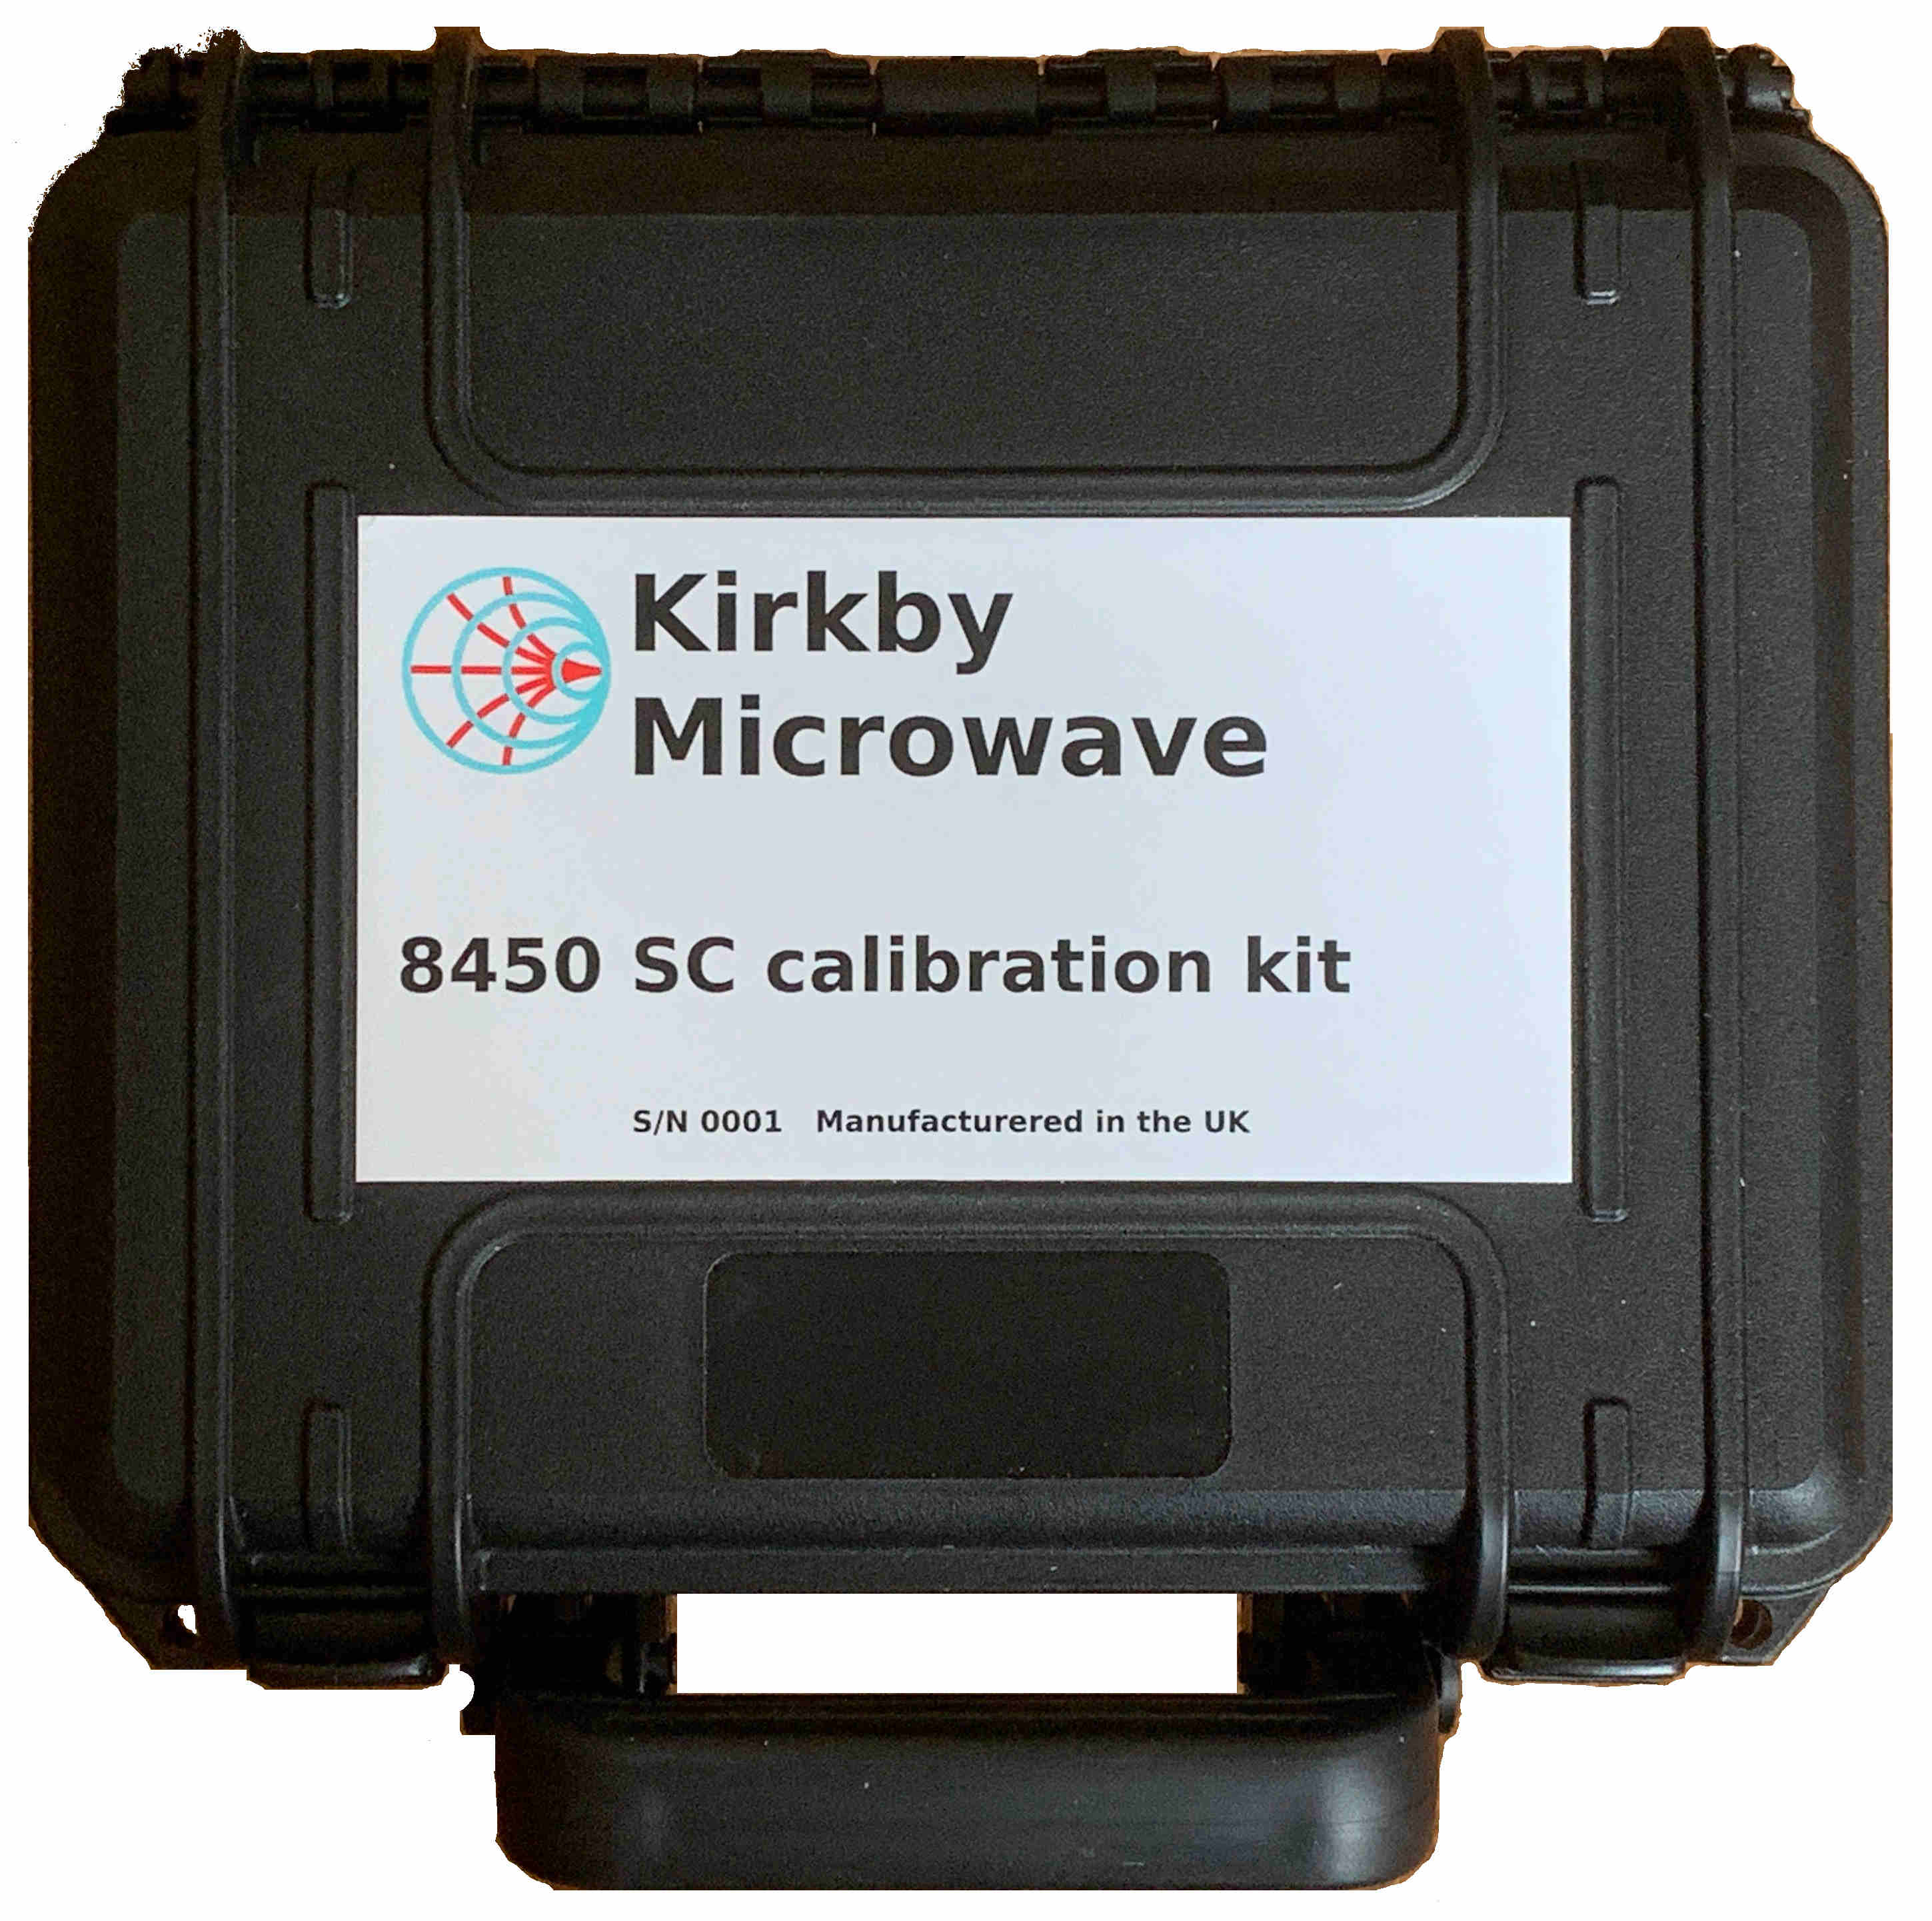 SC calibration kit